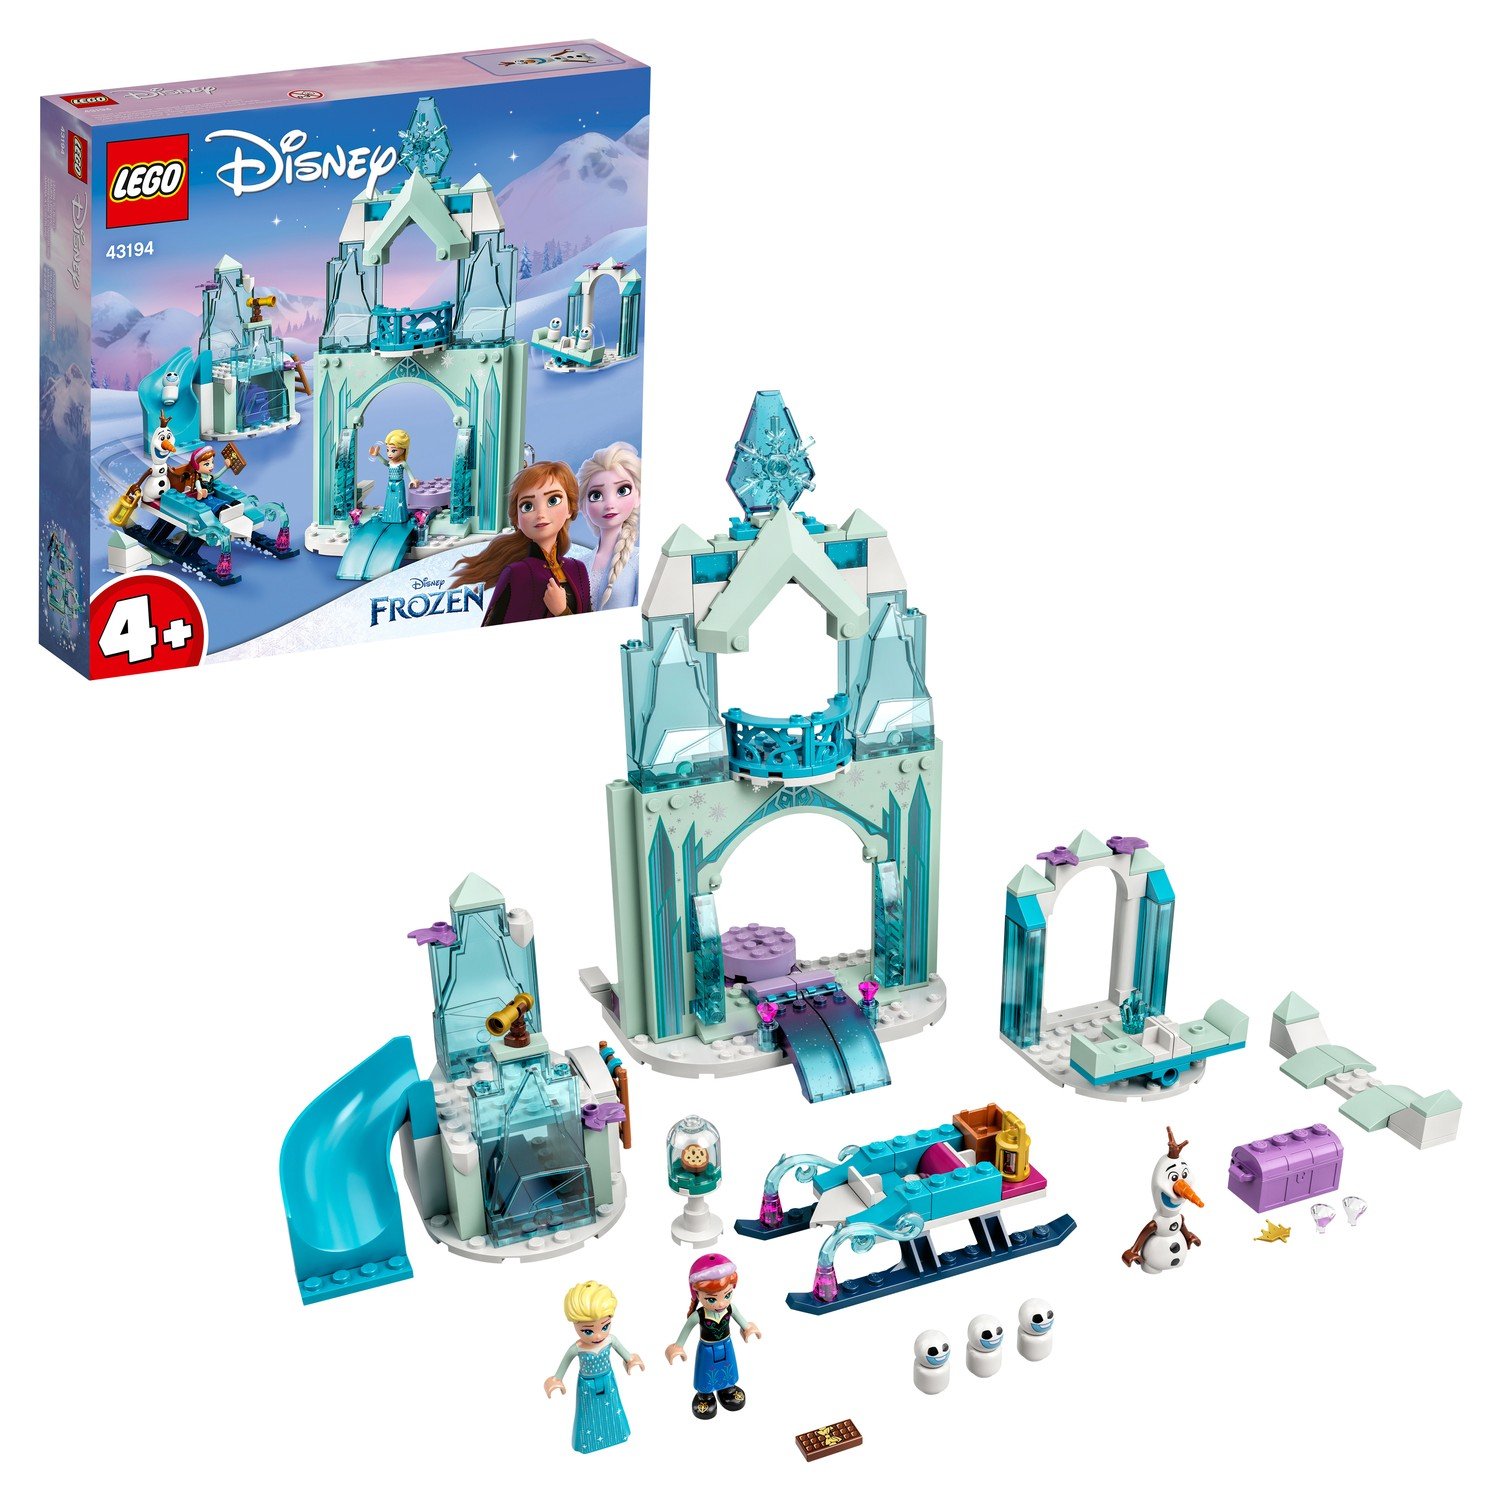 Конструктор LEGO Disney Frozen Зимняя сказка Анны и Эльзы, 154 детали, 43194 lego disney princess frozen двор замка эльзы 43199